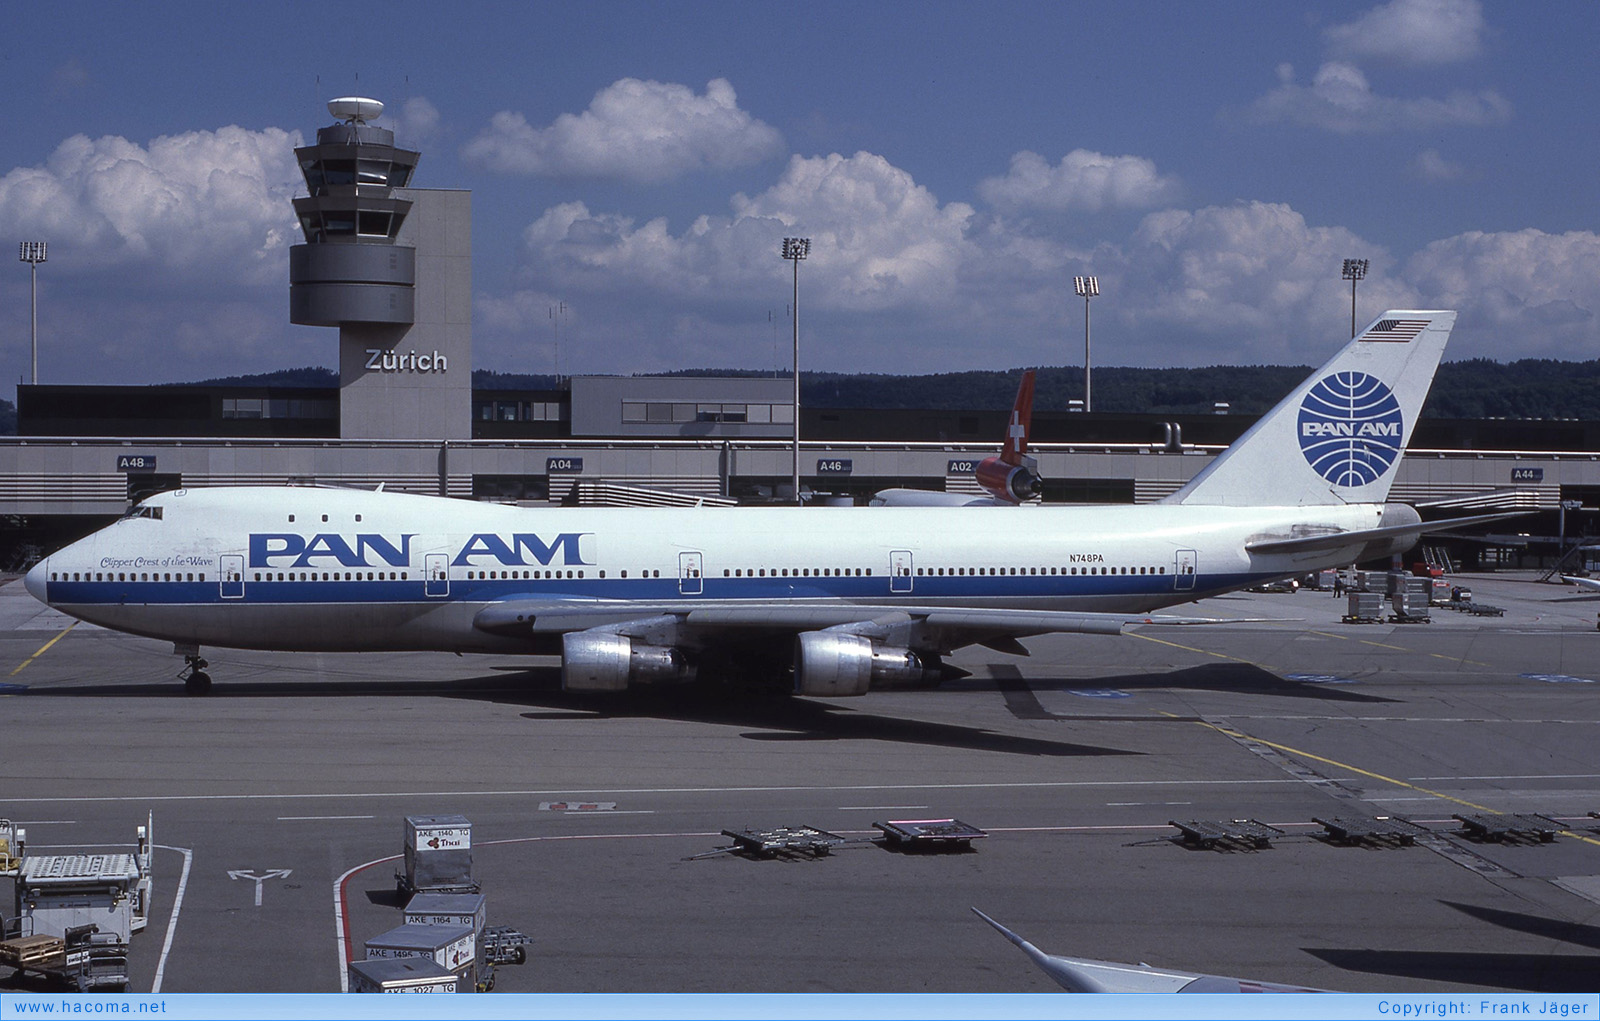 Foto von N748PA - Pan Am Clipper Hornet / Crest of the Wave - Flughafen Zürich - 30.07.1988